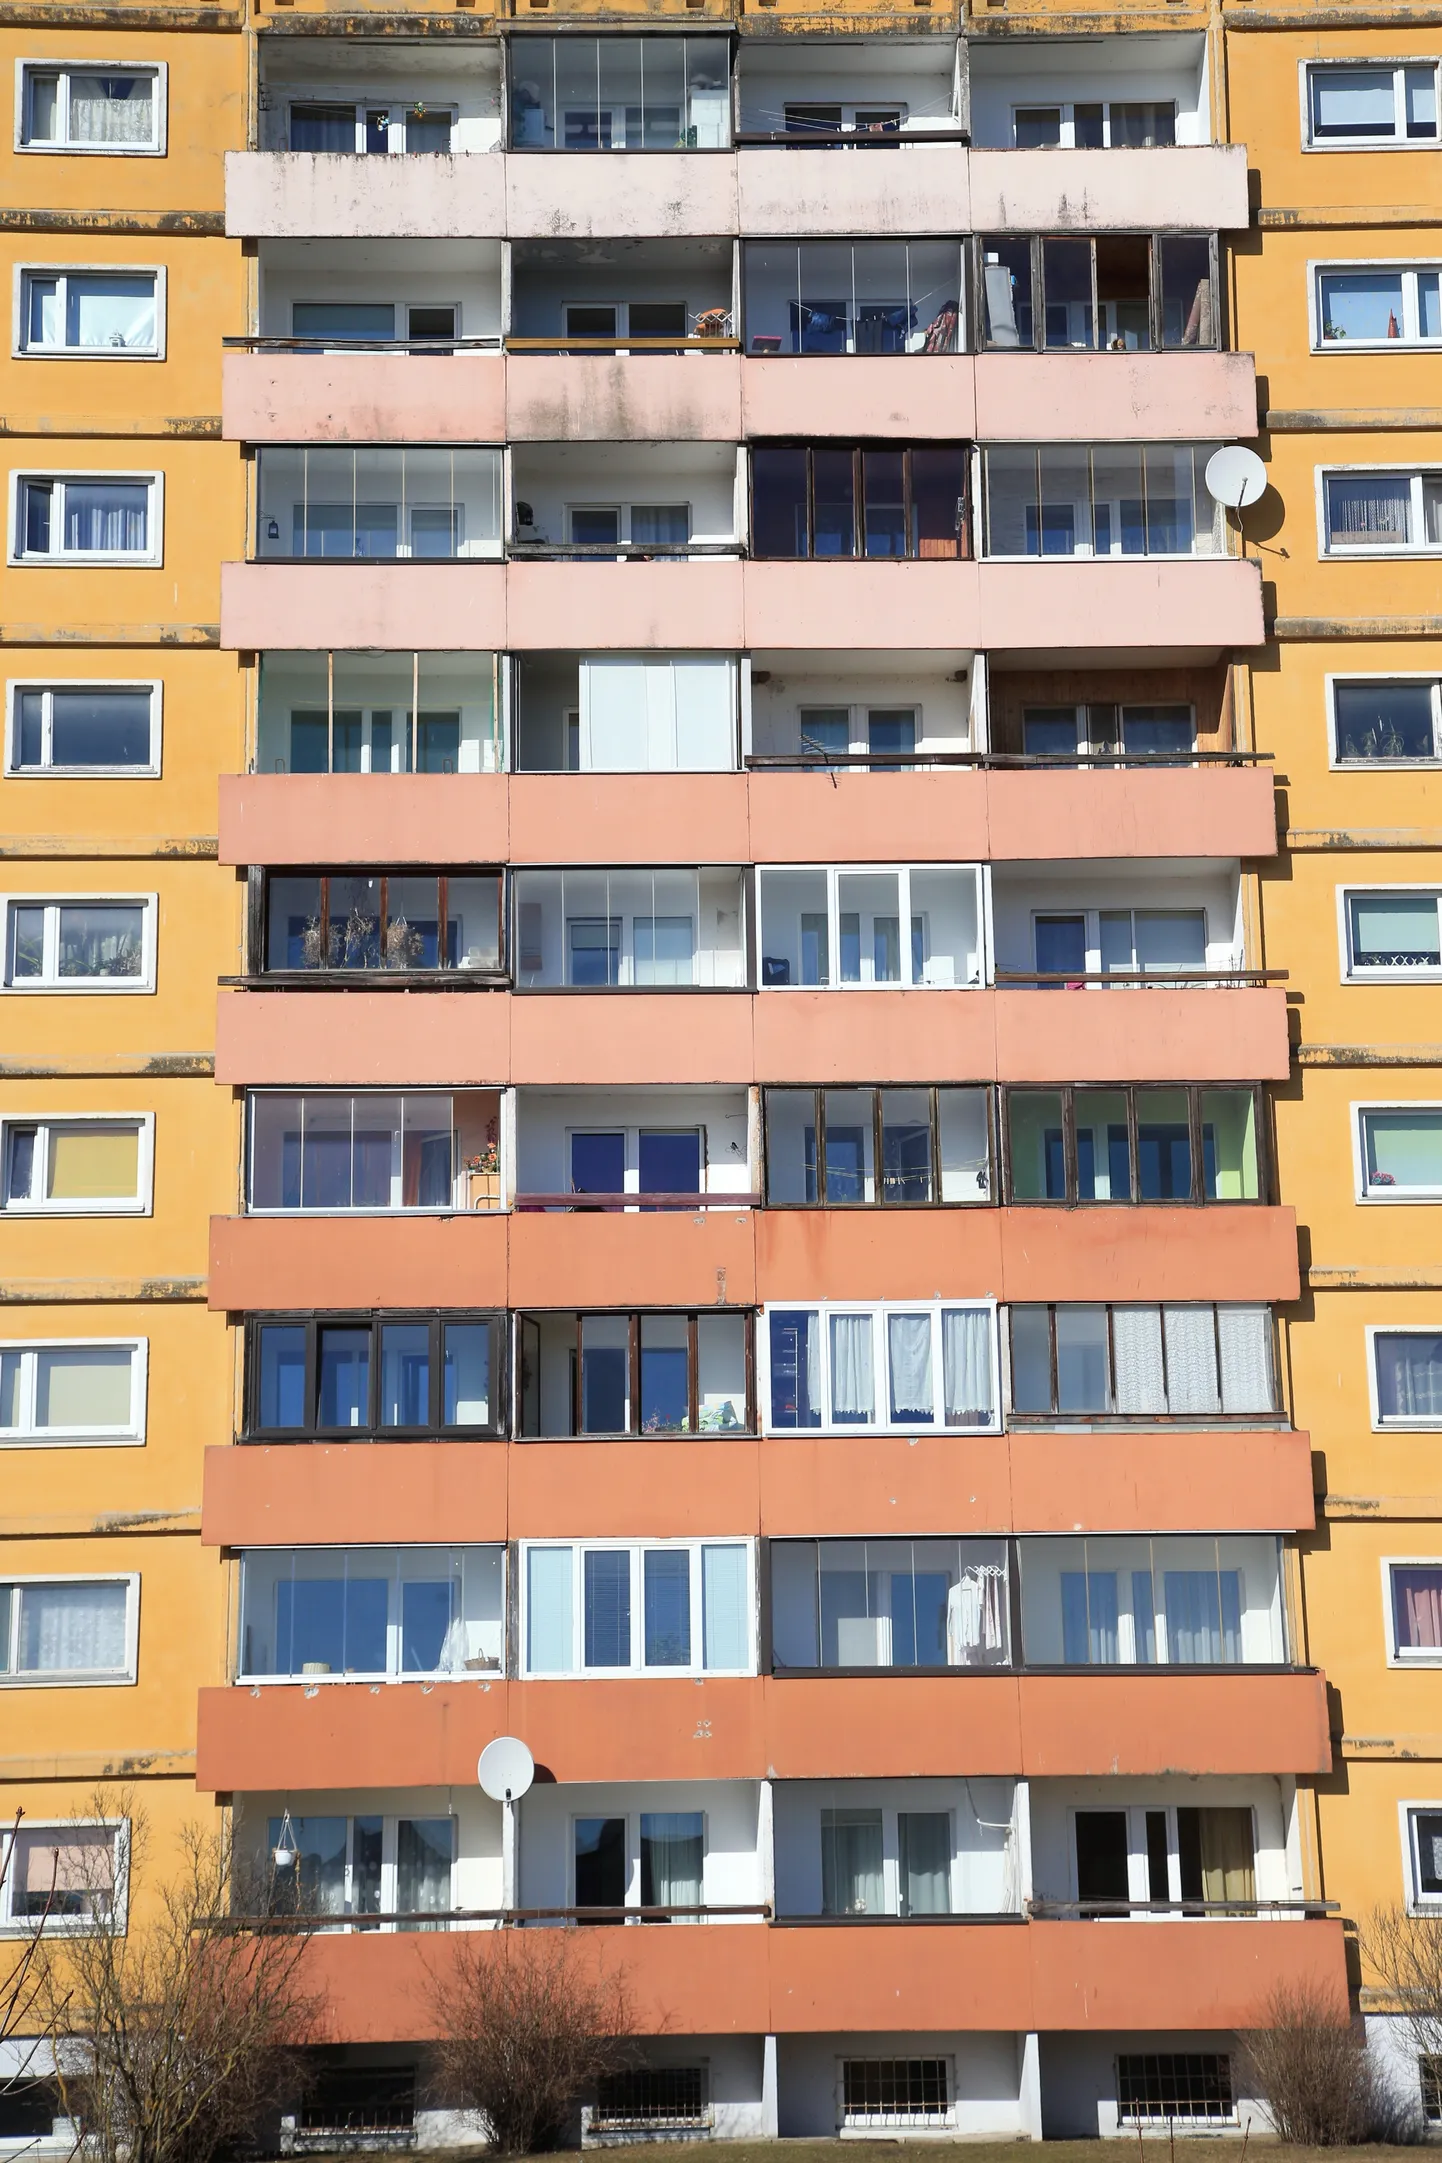 Mõisavahe tänava kortermajad Tartus.